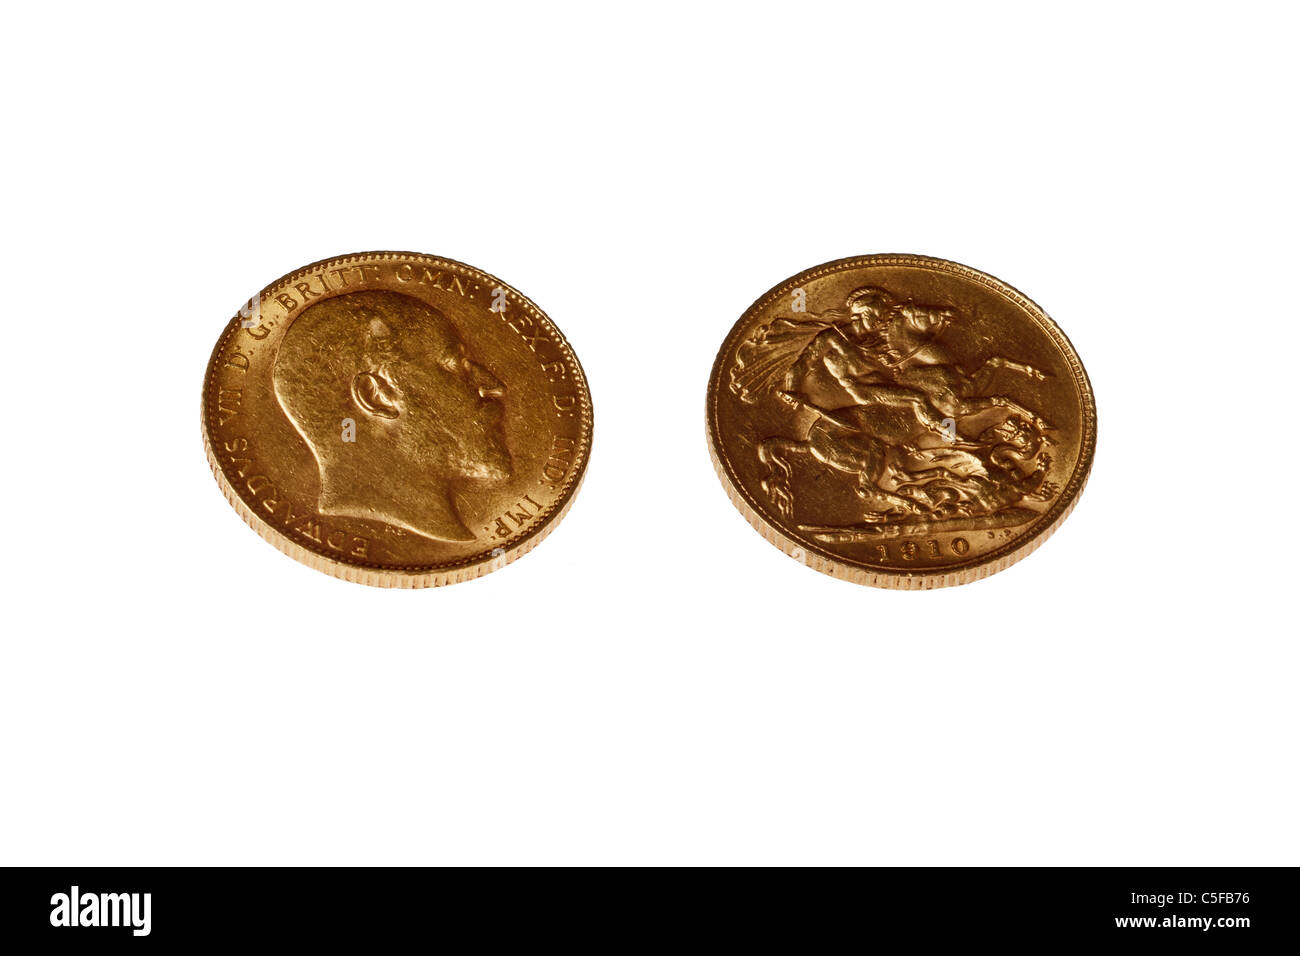 1910 Edward VII Gold moneda soberana contra fondo blanco liso mostrando ambas caras de la moneda Foto de stock